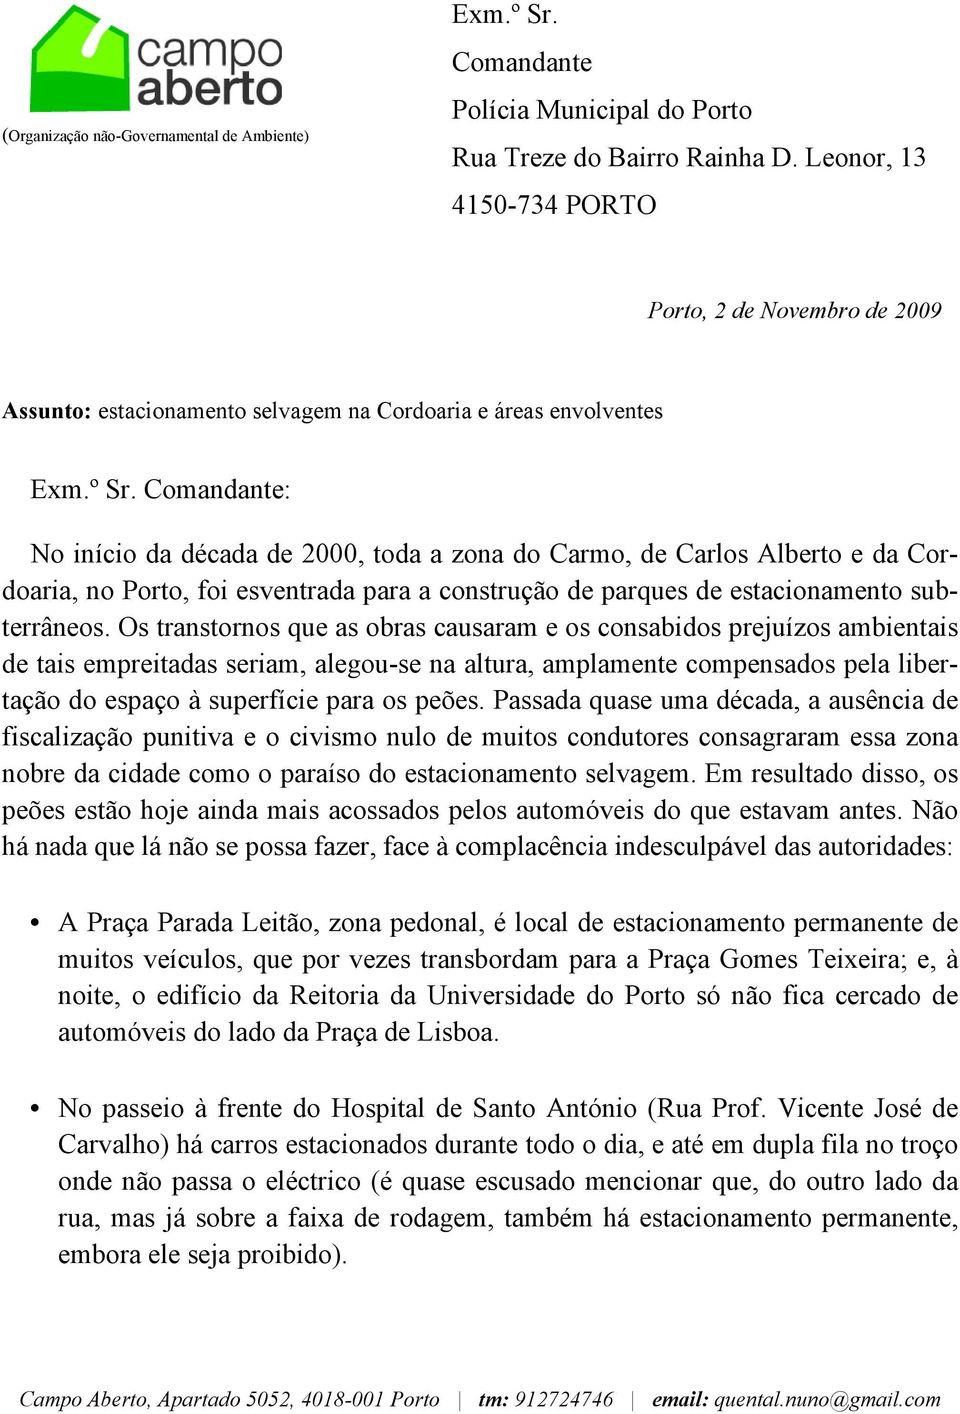 Comandante: No início da década de 2000, toda a zona do Carmo, de Carlos Alberto e da Cordoaria, no Porto, foi esventrada para a construção de parques de estacionamento subterrâneos.